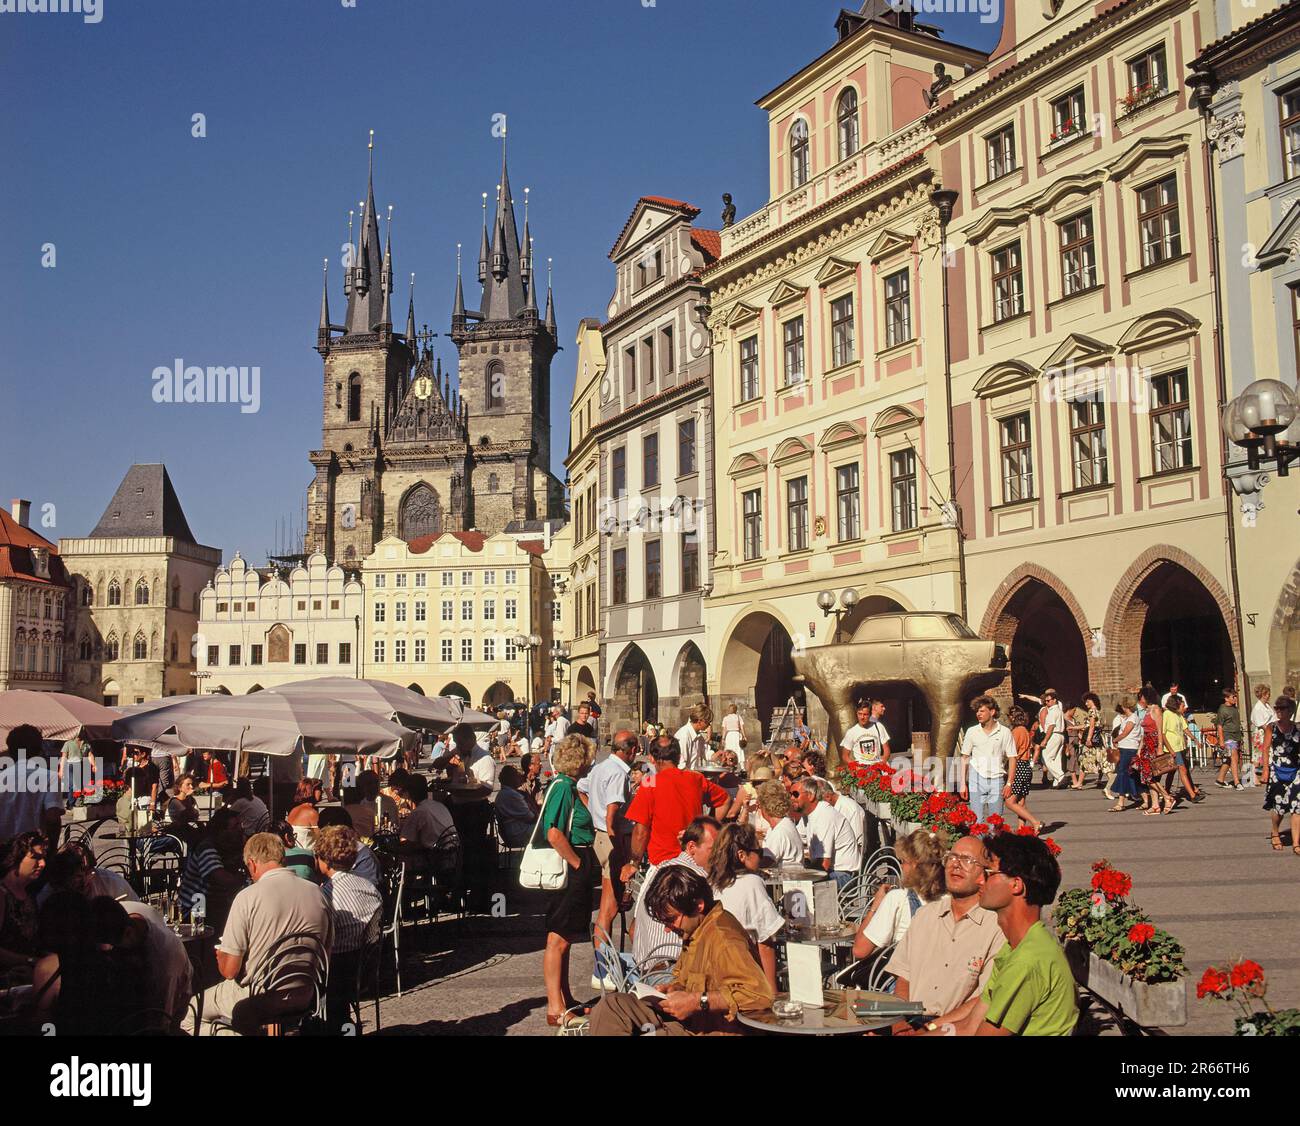 Tschechische Republik. Prager Stadt. Menschenmassen im Straßencafé am Marktplatz mit Blick auf das Alte Rathaus. Stockfoto